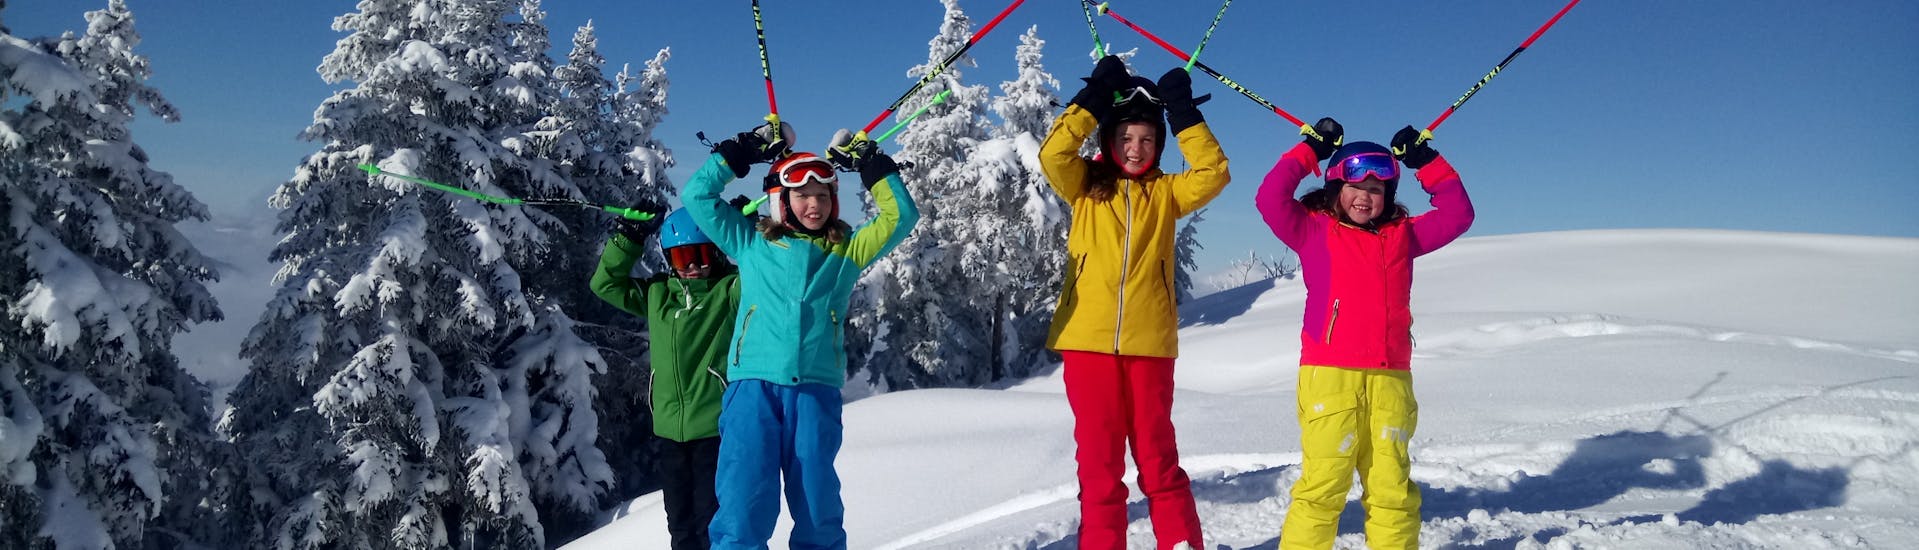 Kinderen in de sneeuw tijdens hun privé skilessen voor kinderen (vanaf 4 jaar) voor alle niveaus met de Skiart skischool in Kitzbühel.